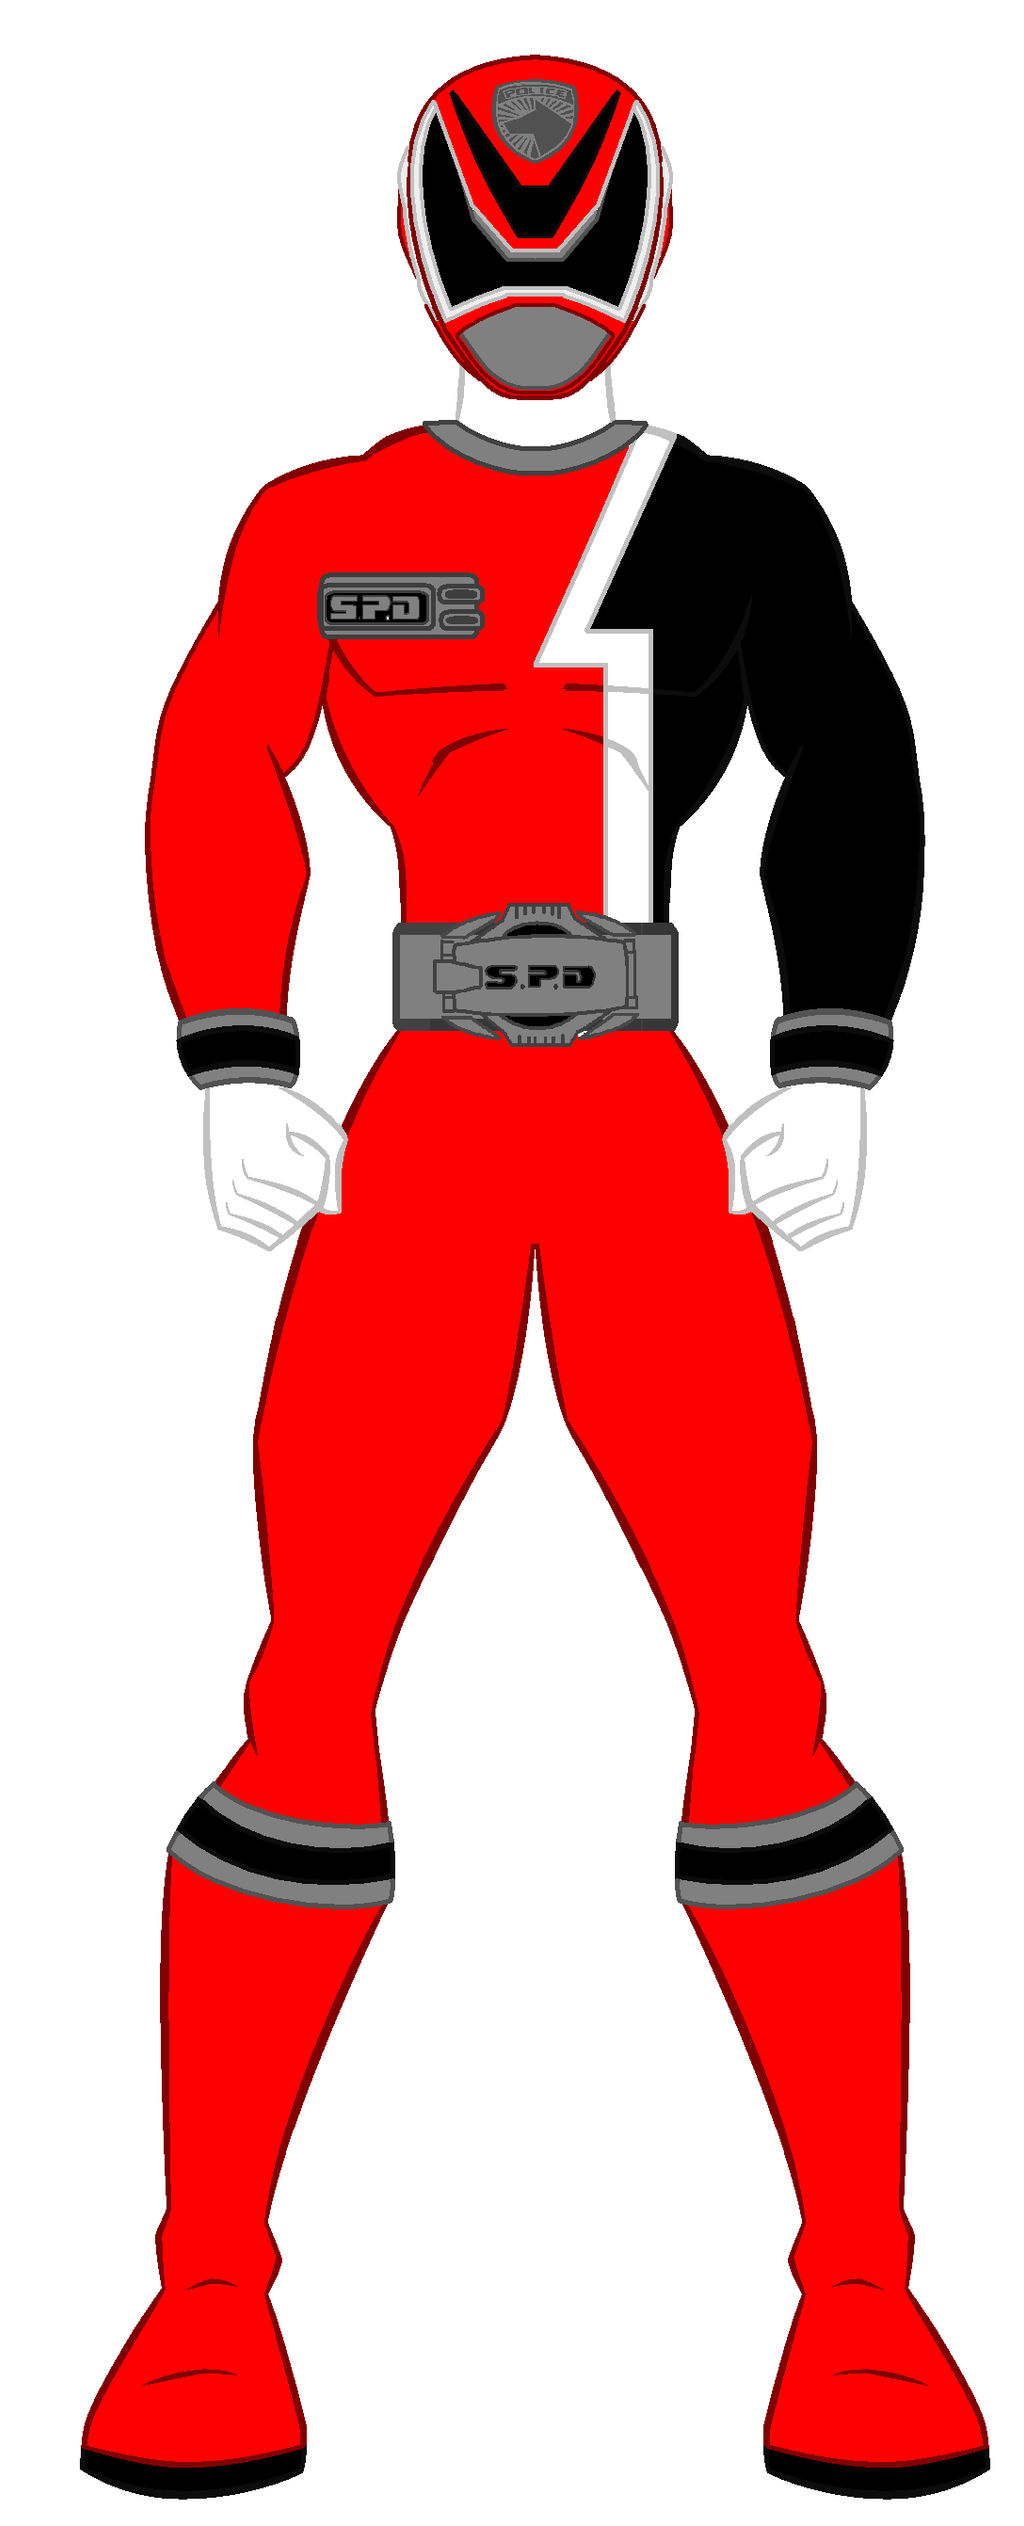 13. Power Rangers Spd - Red Ranger by PowerRangersWorld999 on DeviantArt